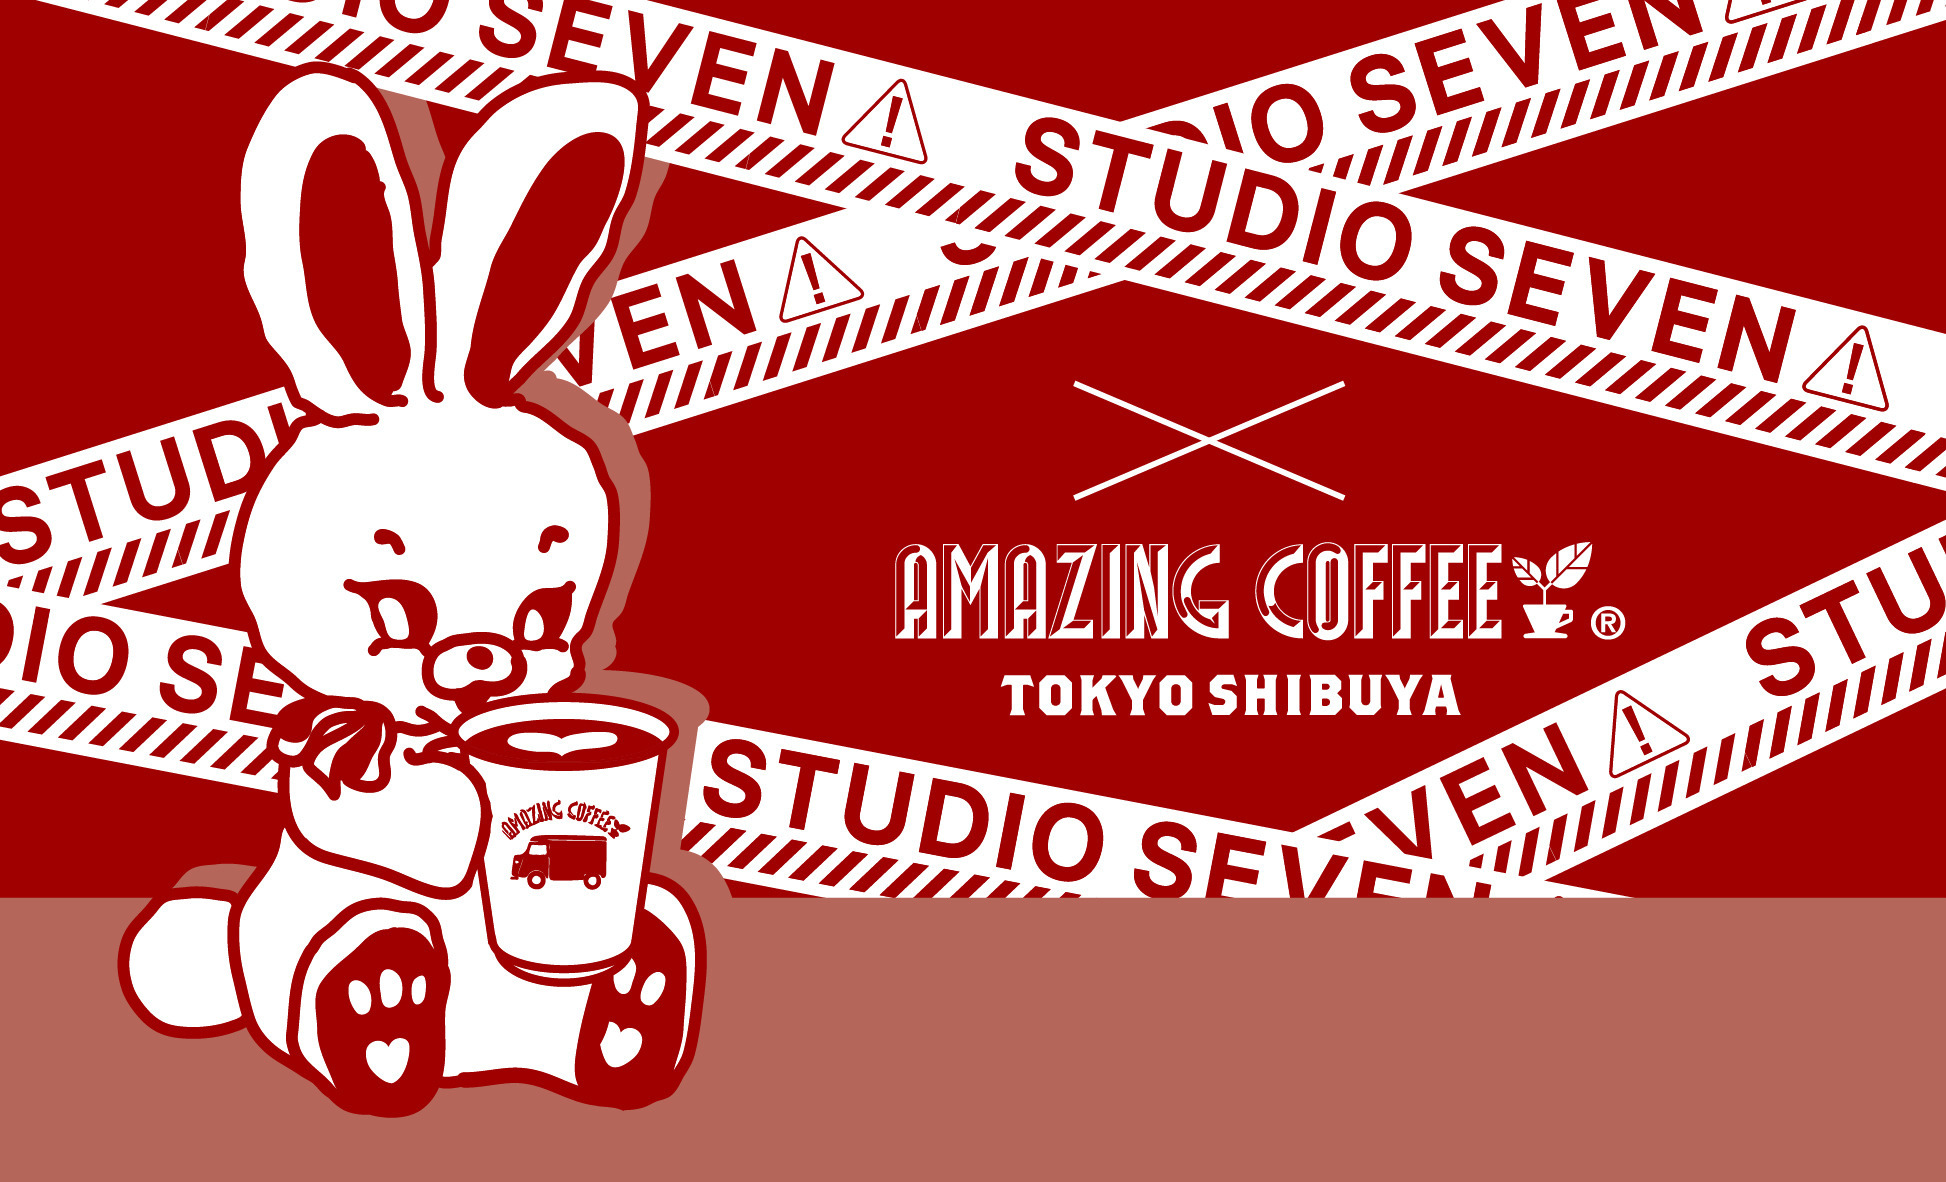 STUDIO SEVEN × AMAZING COFFEE